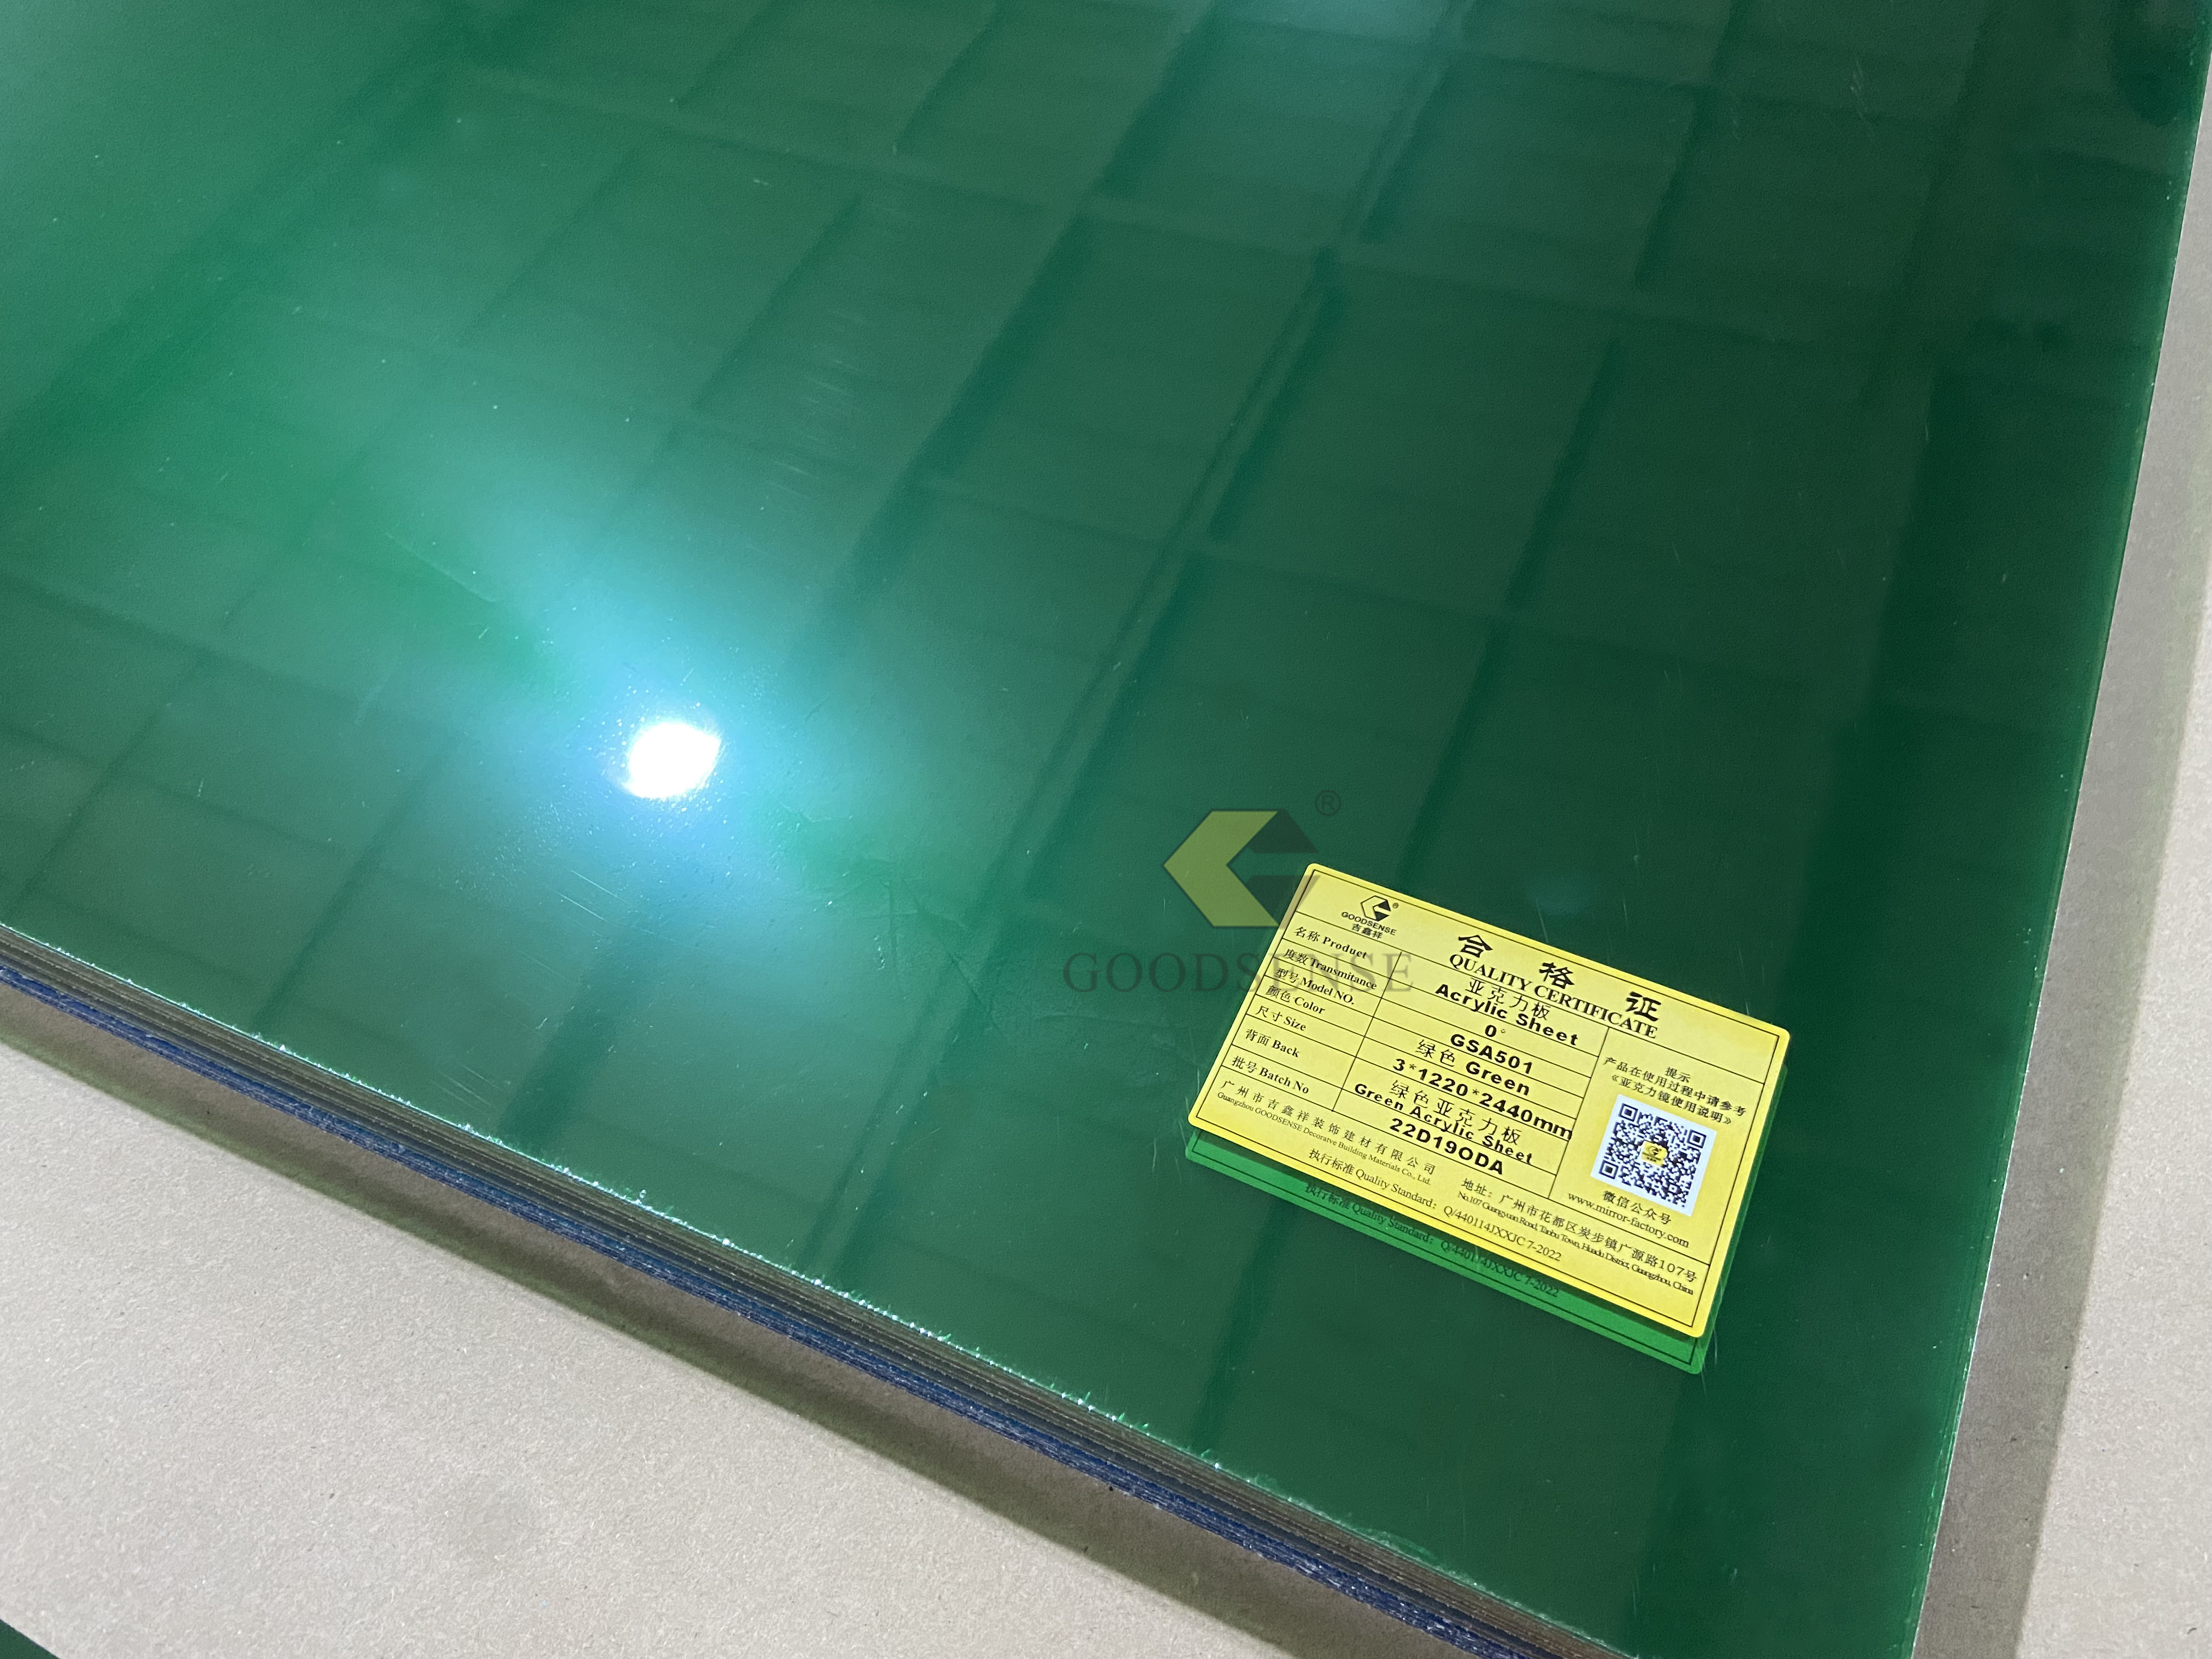 Goodsense Fabricante de espejos de una sola cara de acrílico verde Pintura trasera Hojas de espejo de plexiglás lucita personalizadas Decoración de pared Seguridad irrompible Azulejos de plexiglás Espejo Vietnam para grabado láser